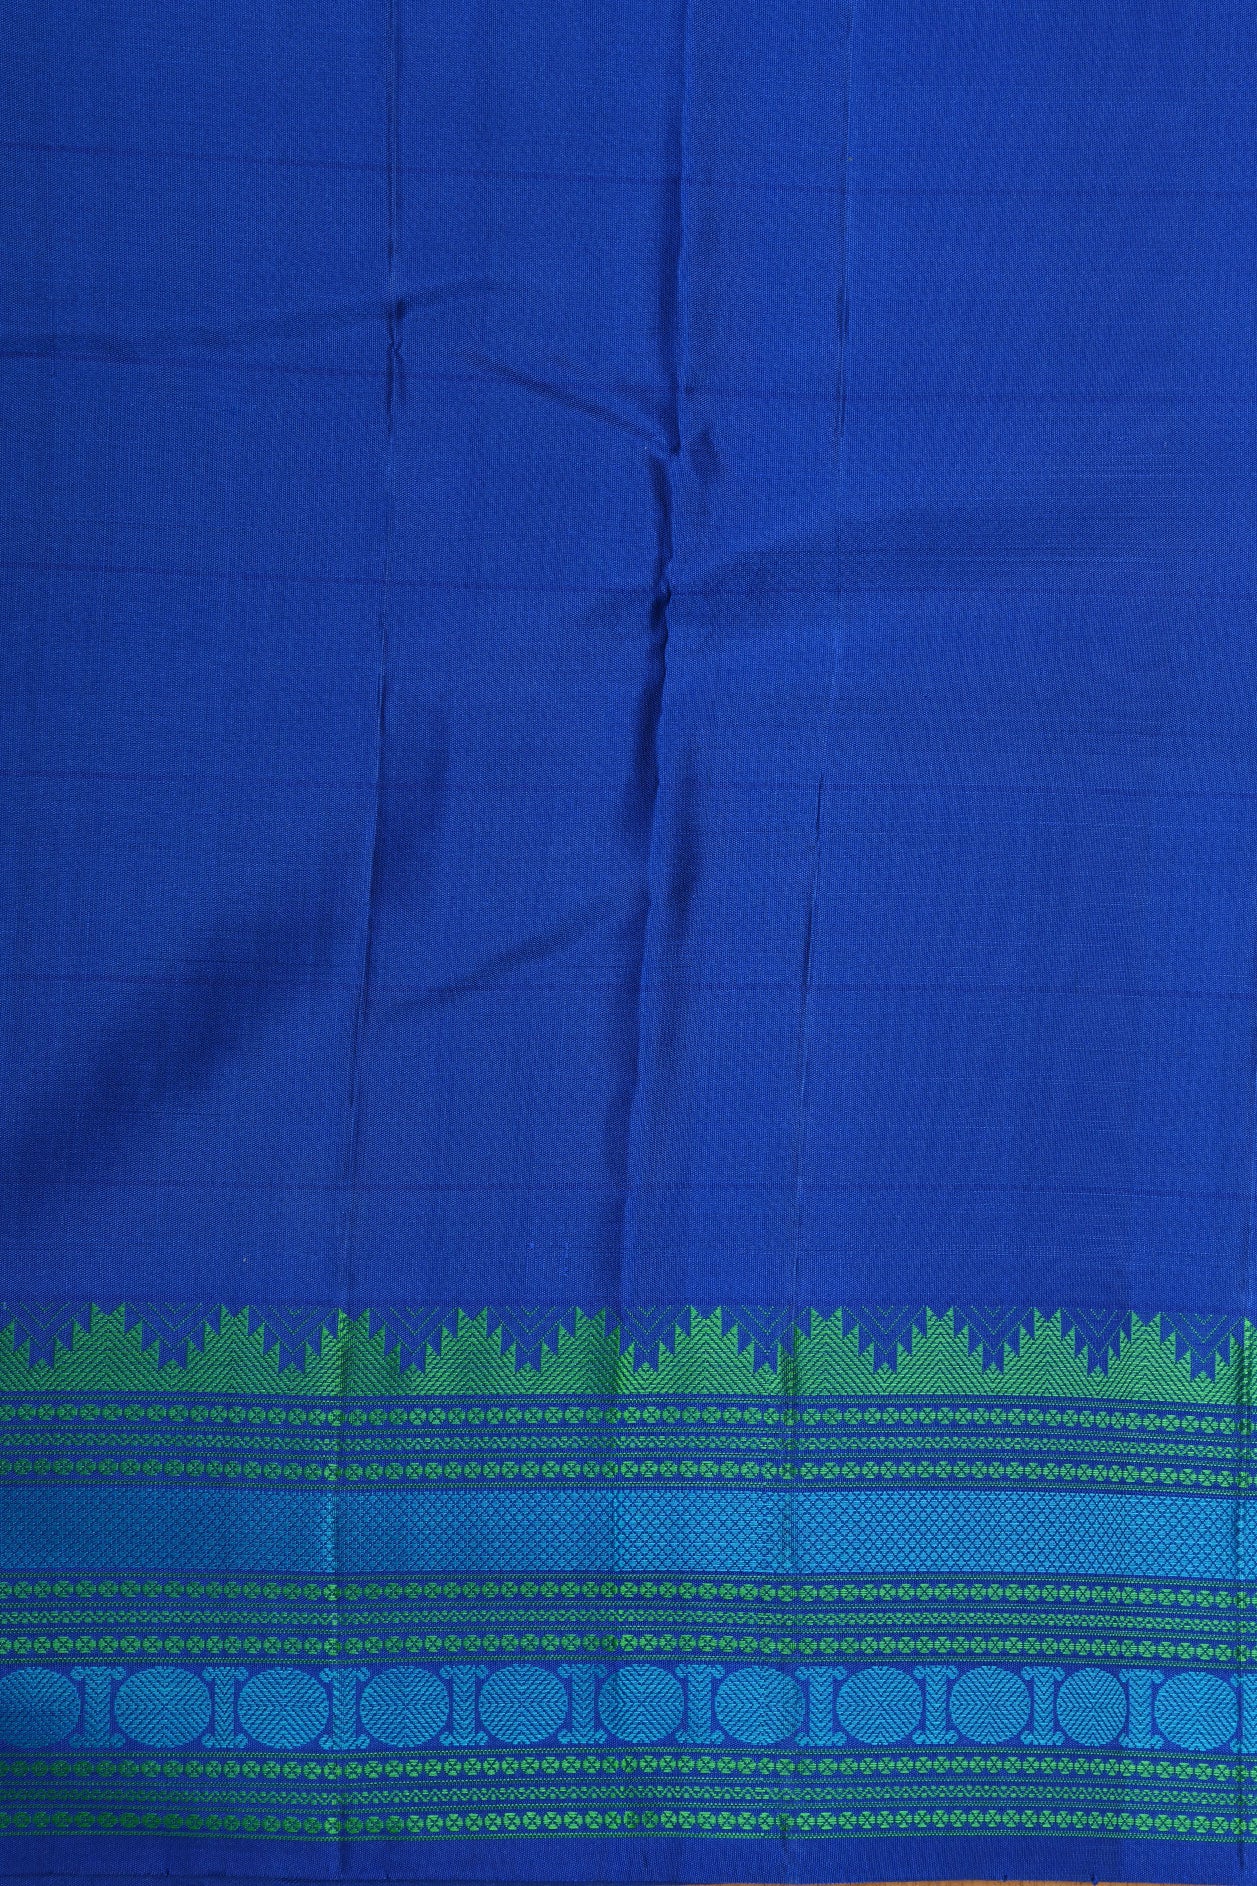 Thread Work Border With Checks And Rudraksh Butta Bluish Green Kanchipuram Silk Saree